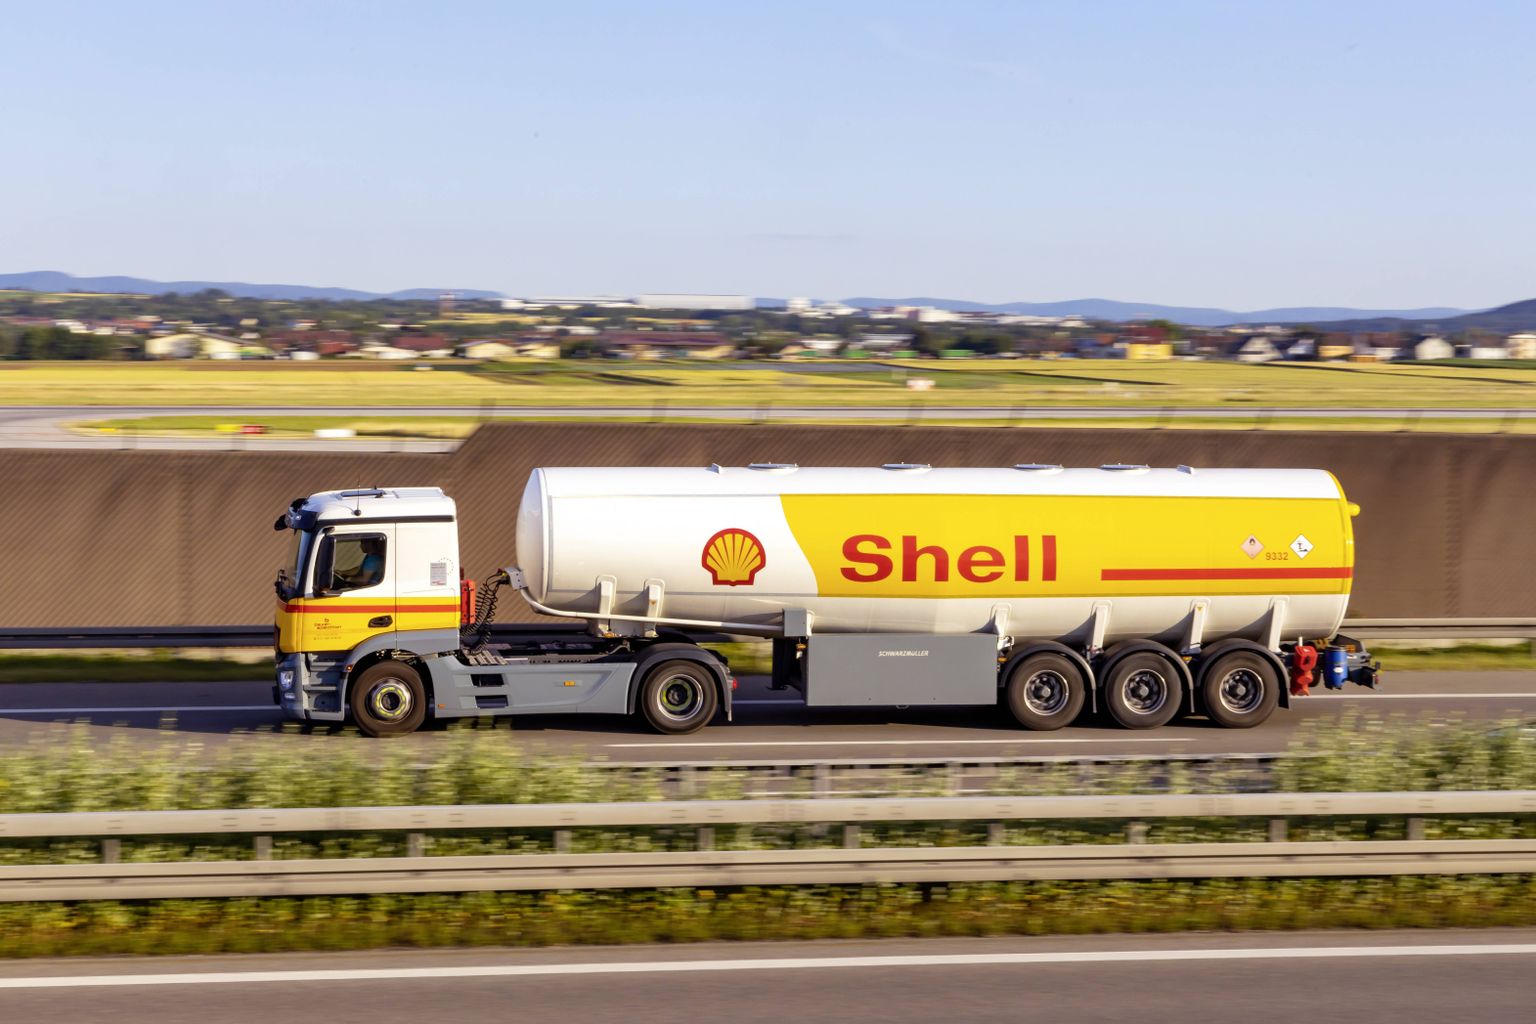 Shell Saksamaa roheluses Autobahnil kütust vedamas.